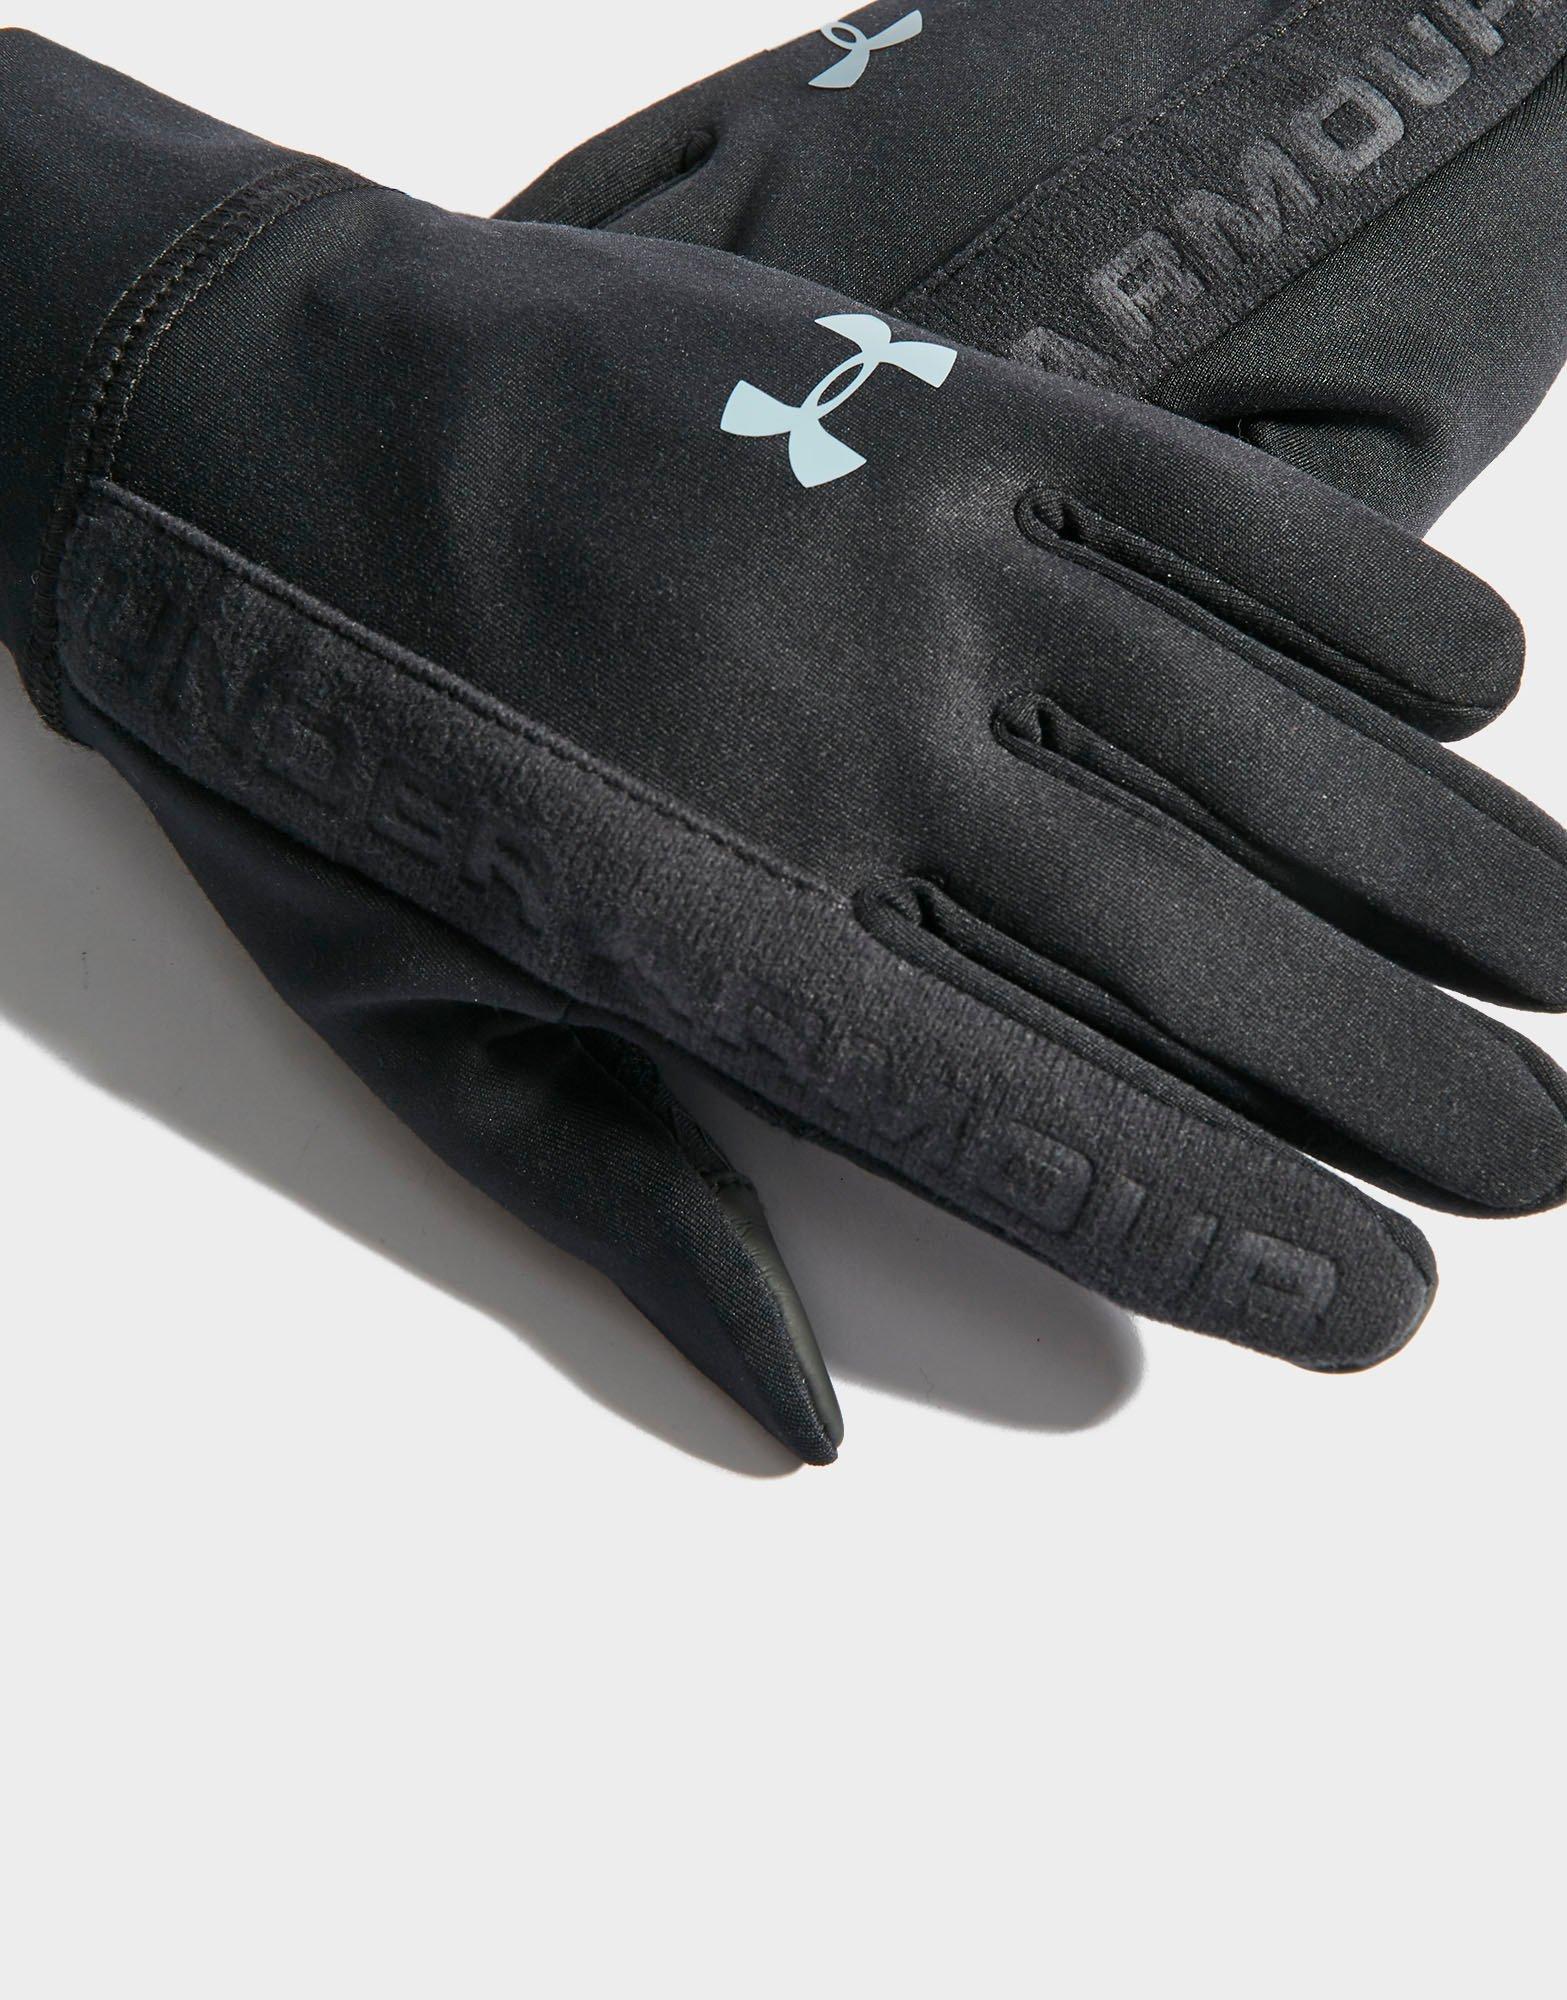 under armour etip gloves